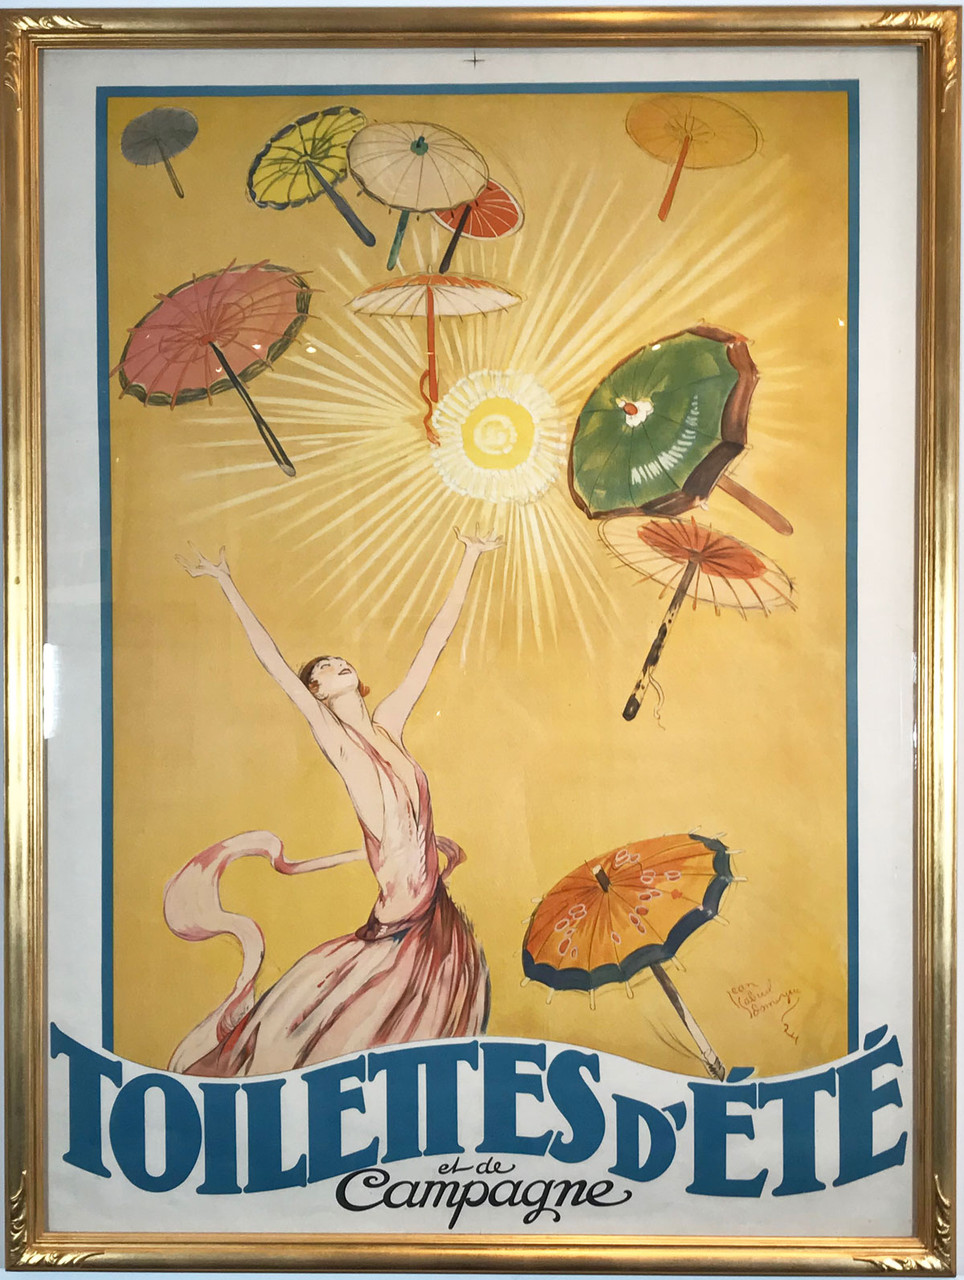 Toilettes D Ete et de Campagne original vintage poster by Jean-Gabriel Domergue from 1926 France.